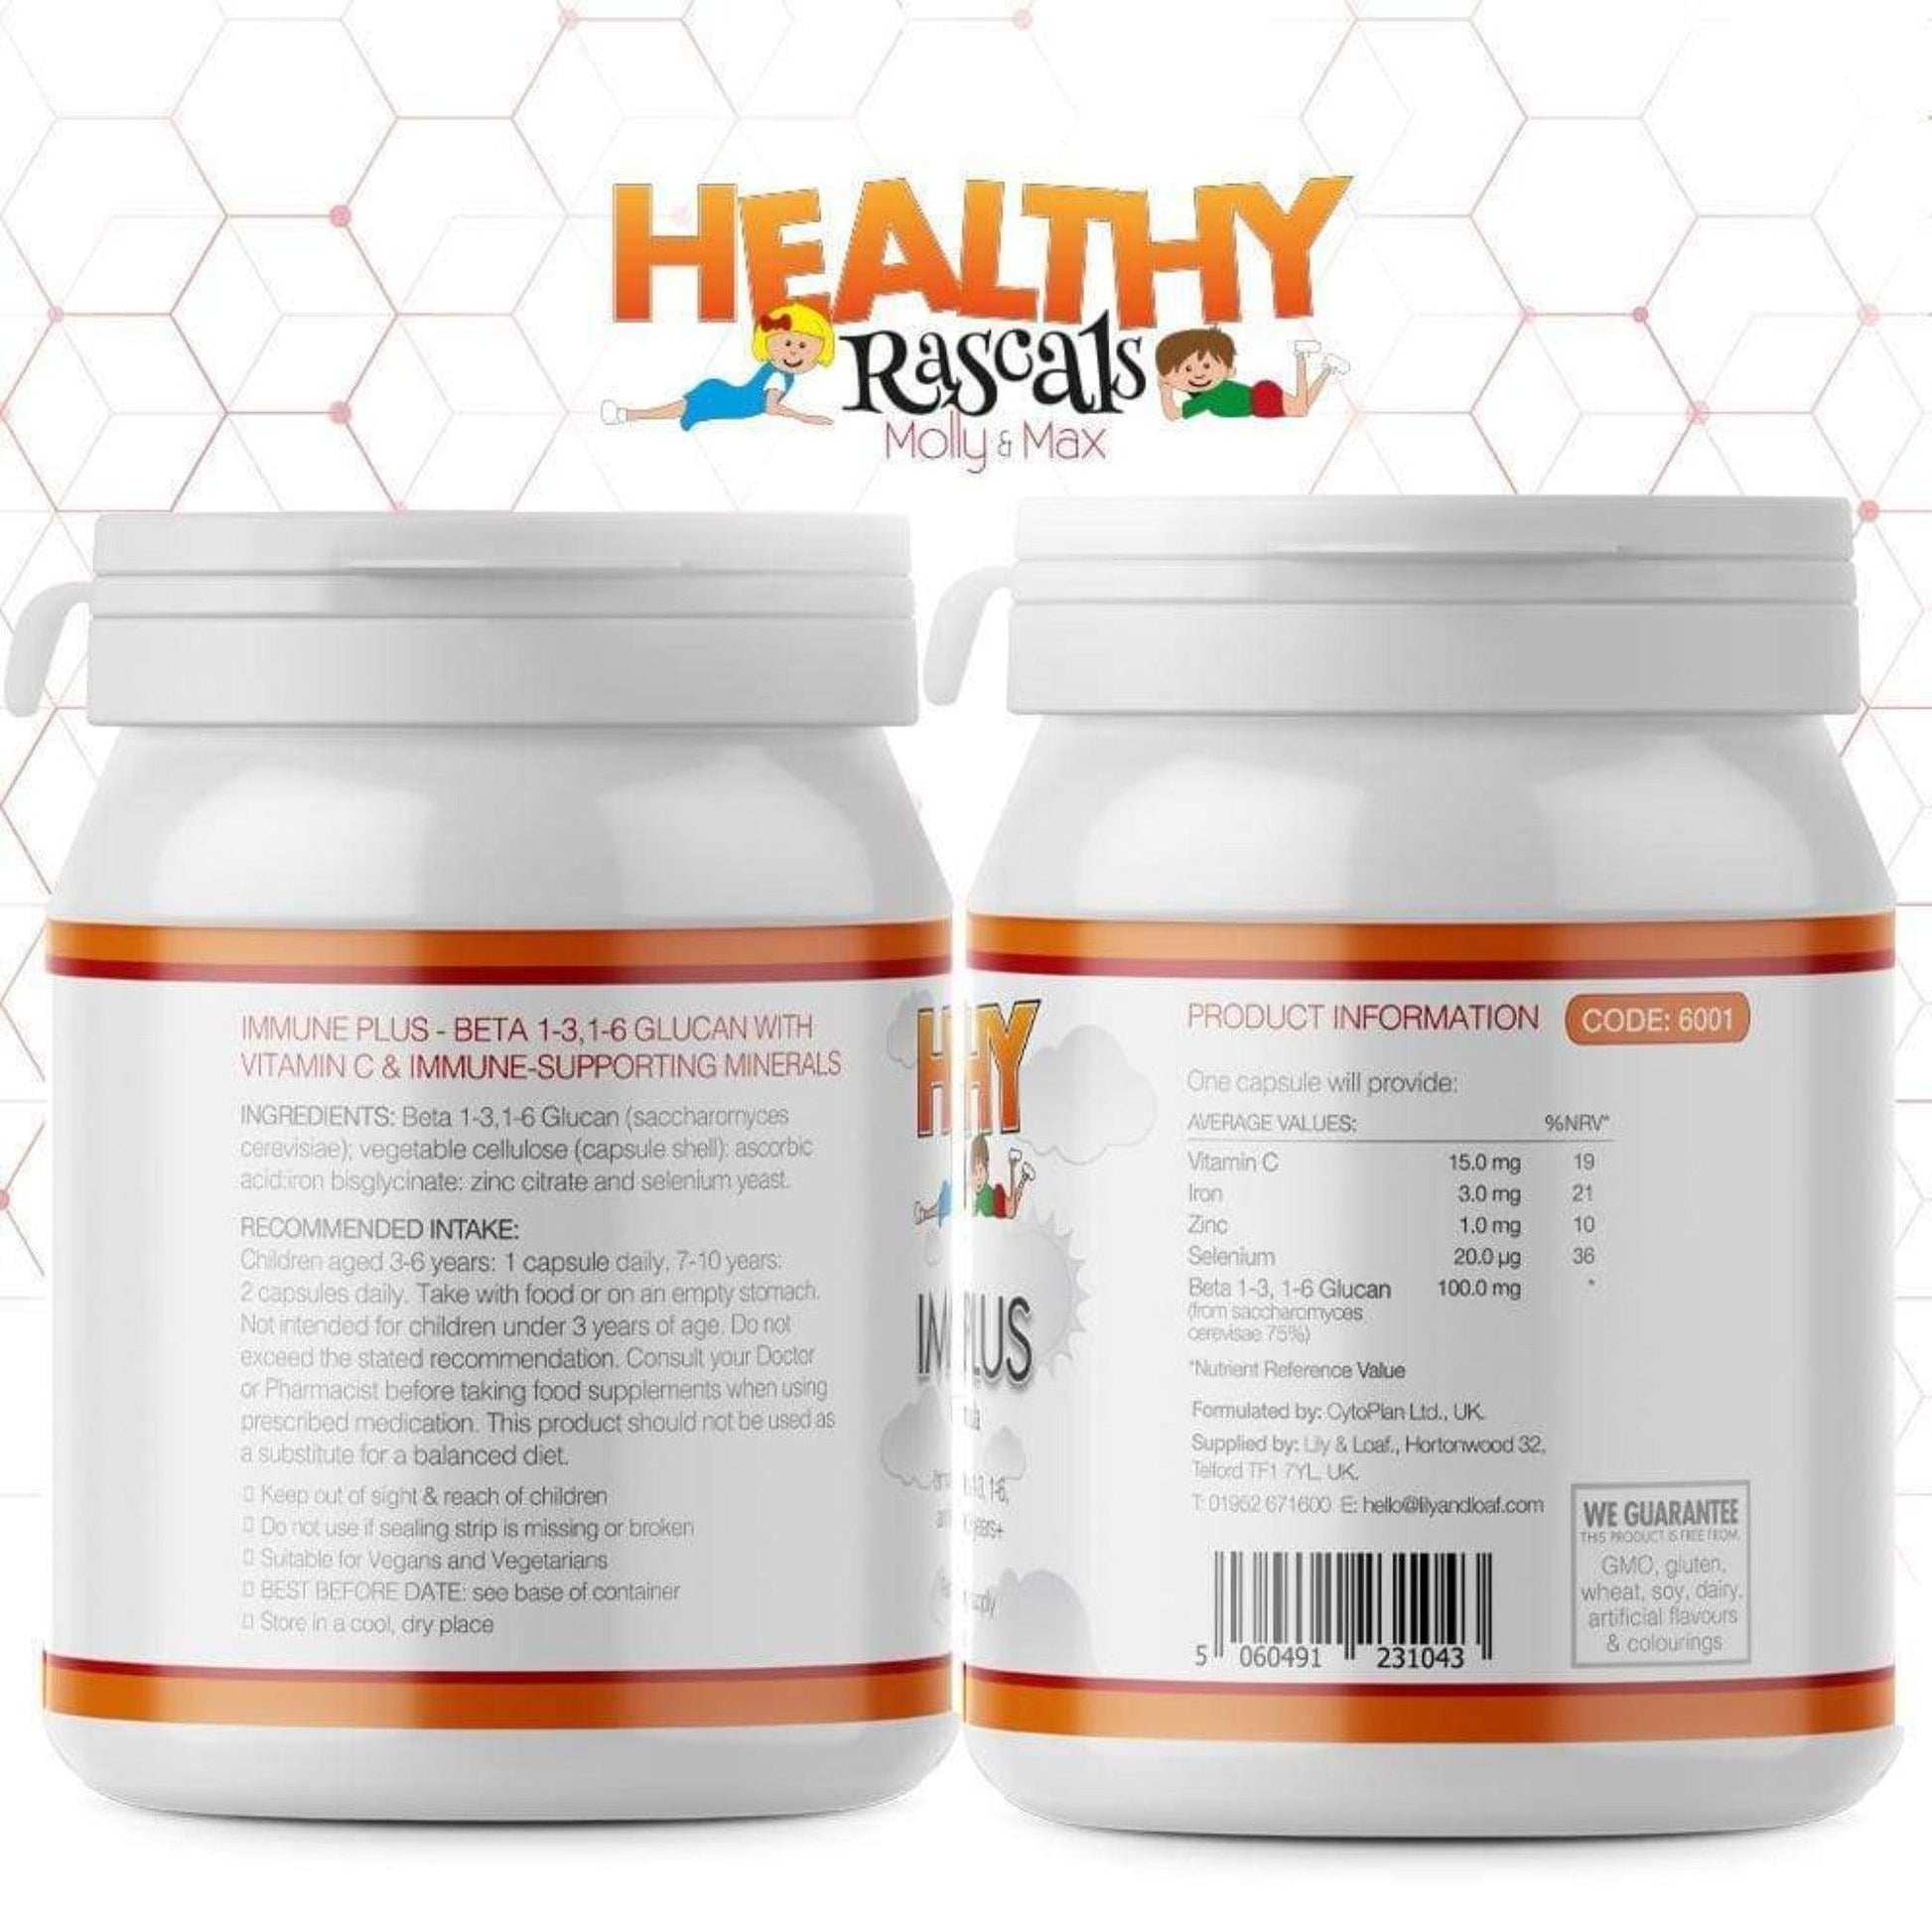 Label detail of Immune Plus supplement